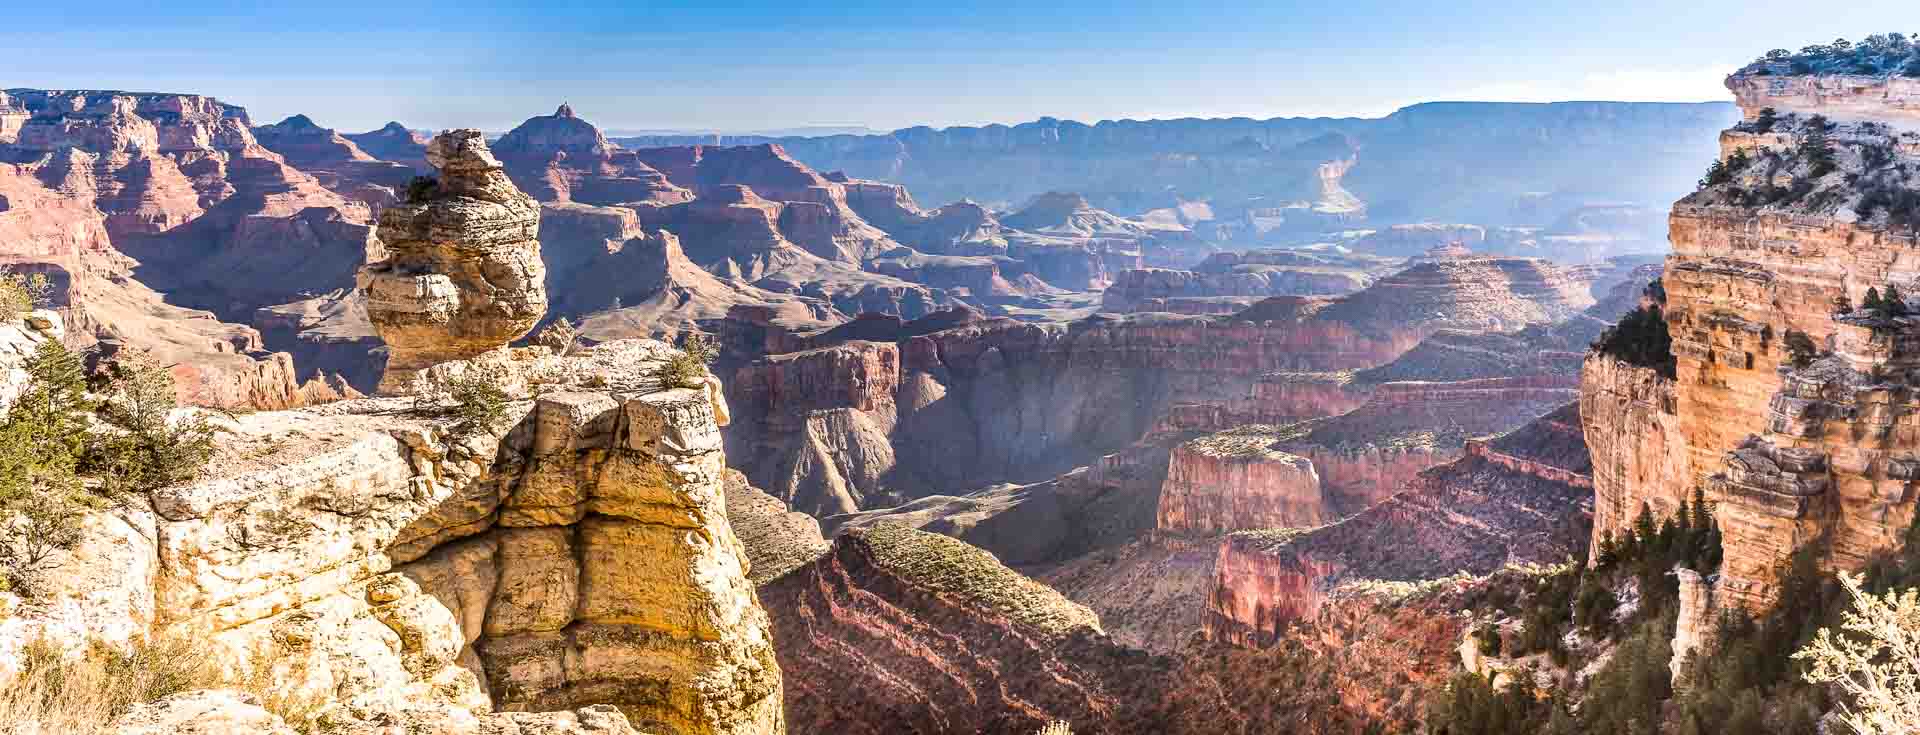 7 Consejos para visitar el Gran Cañon del Colorado